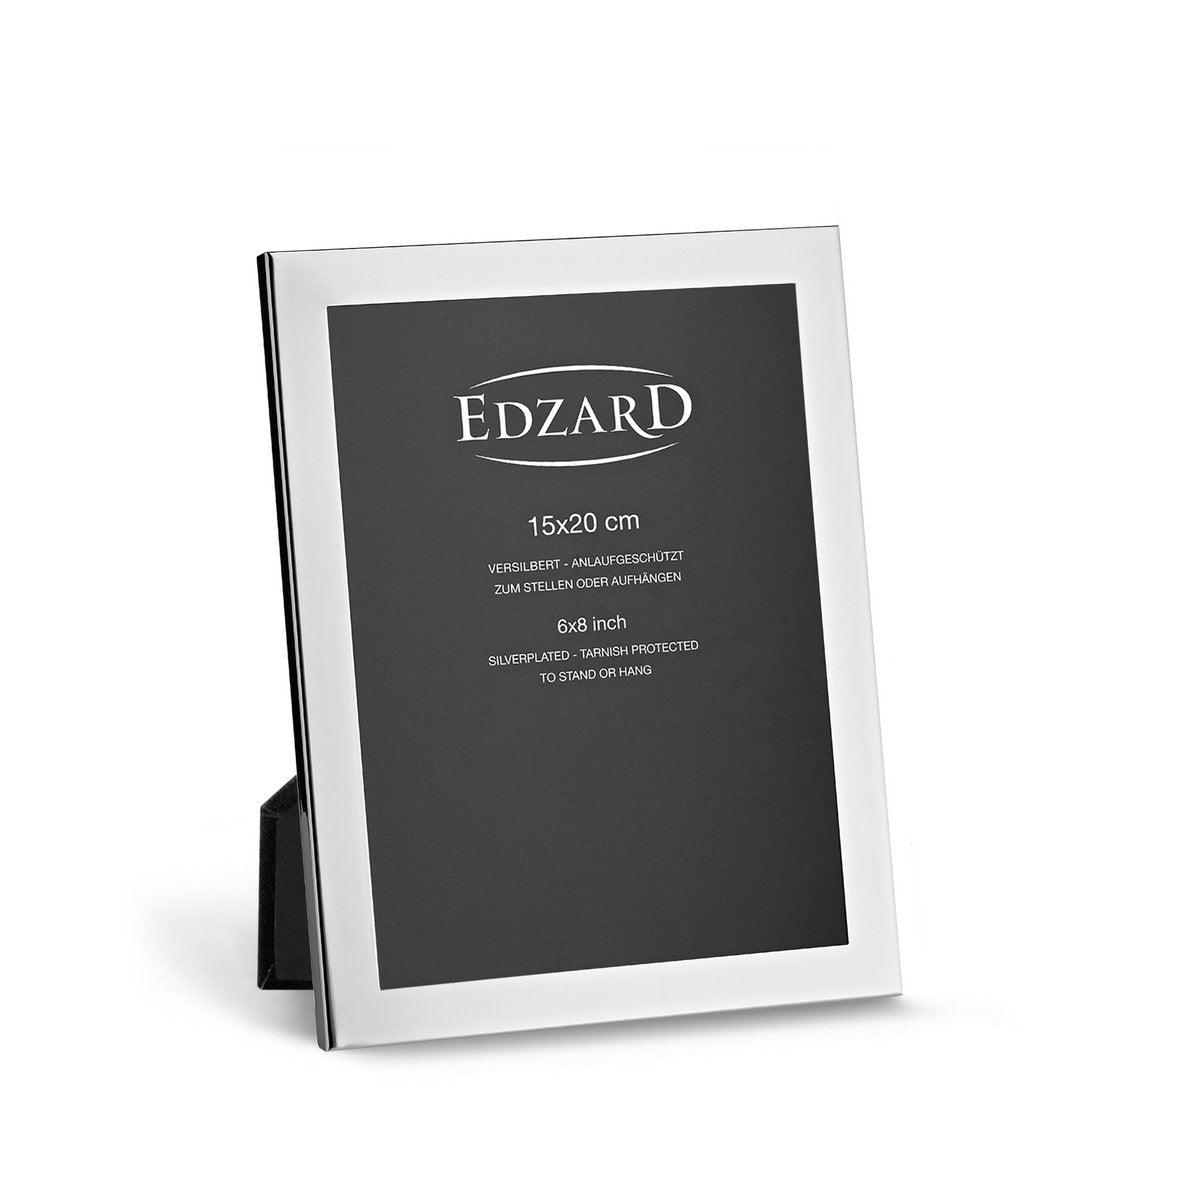 EDZARD Fotorahmen Prato für Foto 15 x 20 cm, edel versilbert, anlaufgeschützt, mit 2 Aufhängern - HomeDesign Knaus